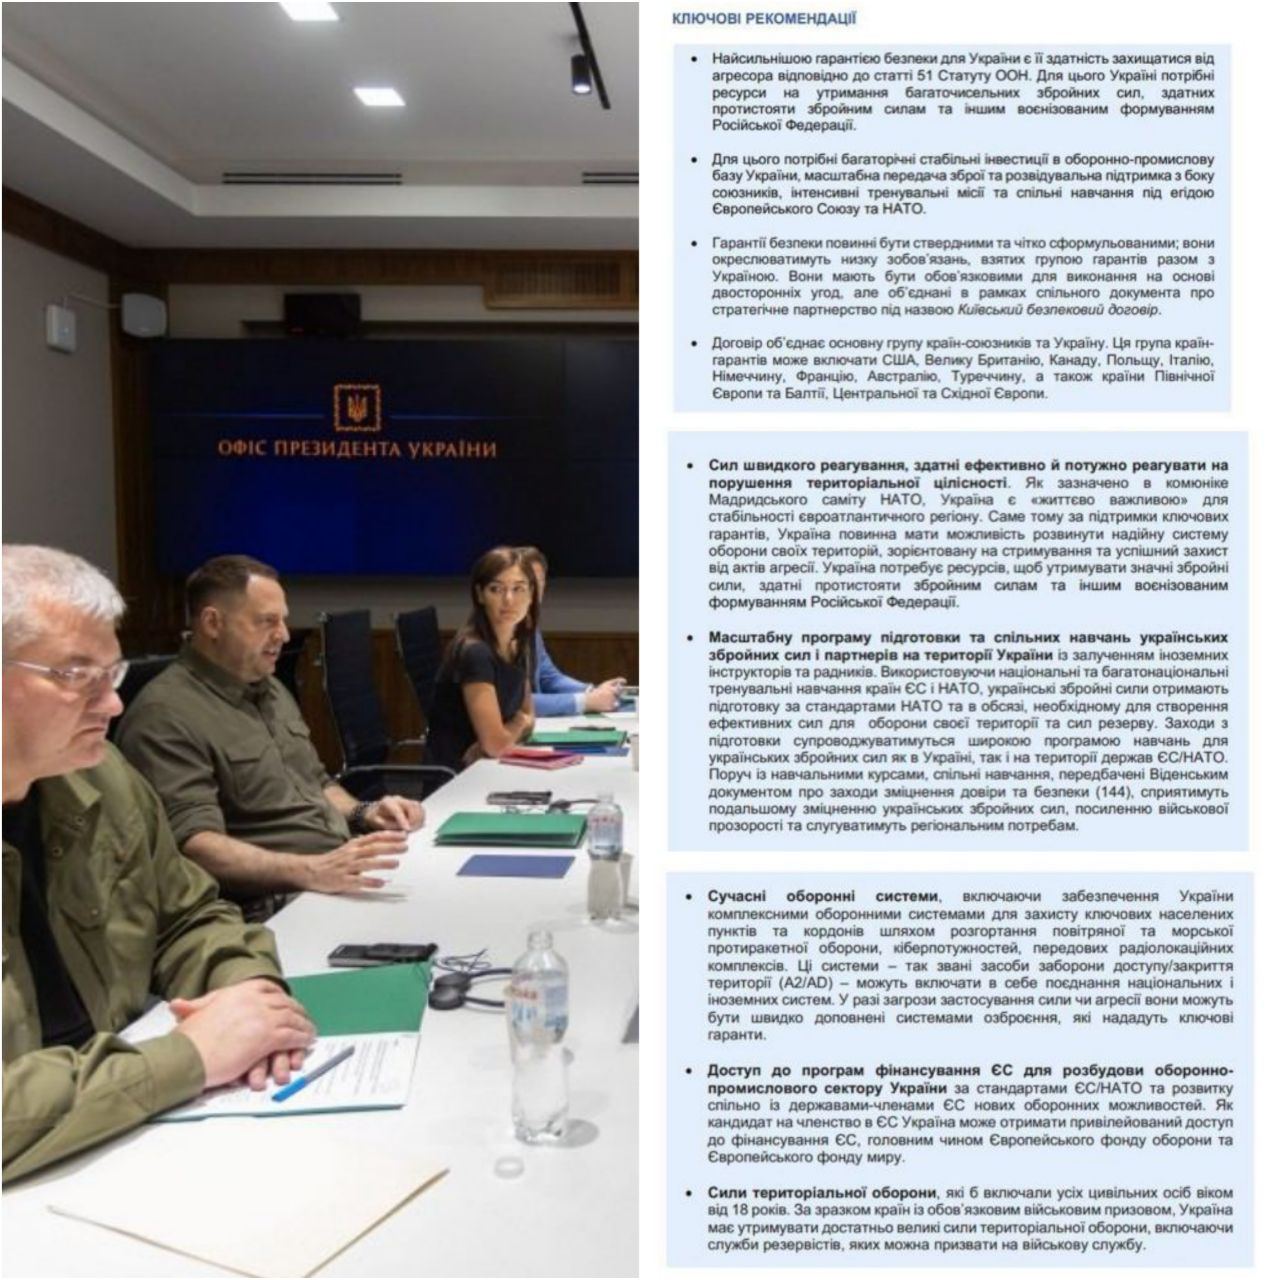 Офис президента и экс-генсек НАТО Андерс Фог Расмуссен презентовали рекомендации по гарантиям безопасности для Украины